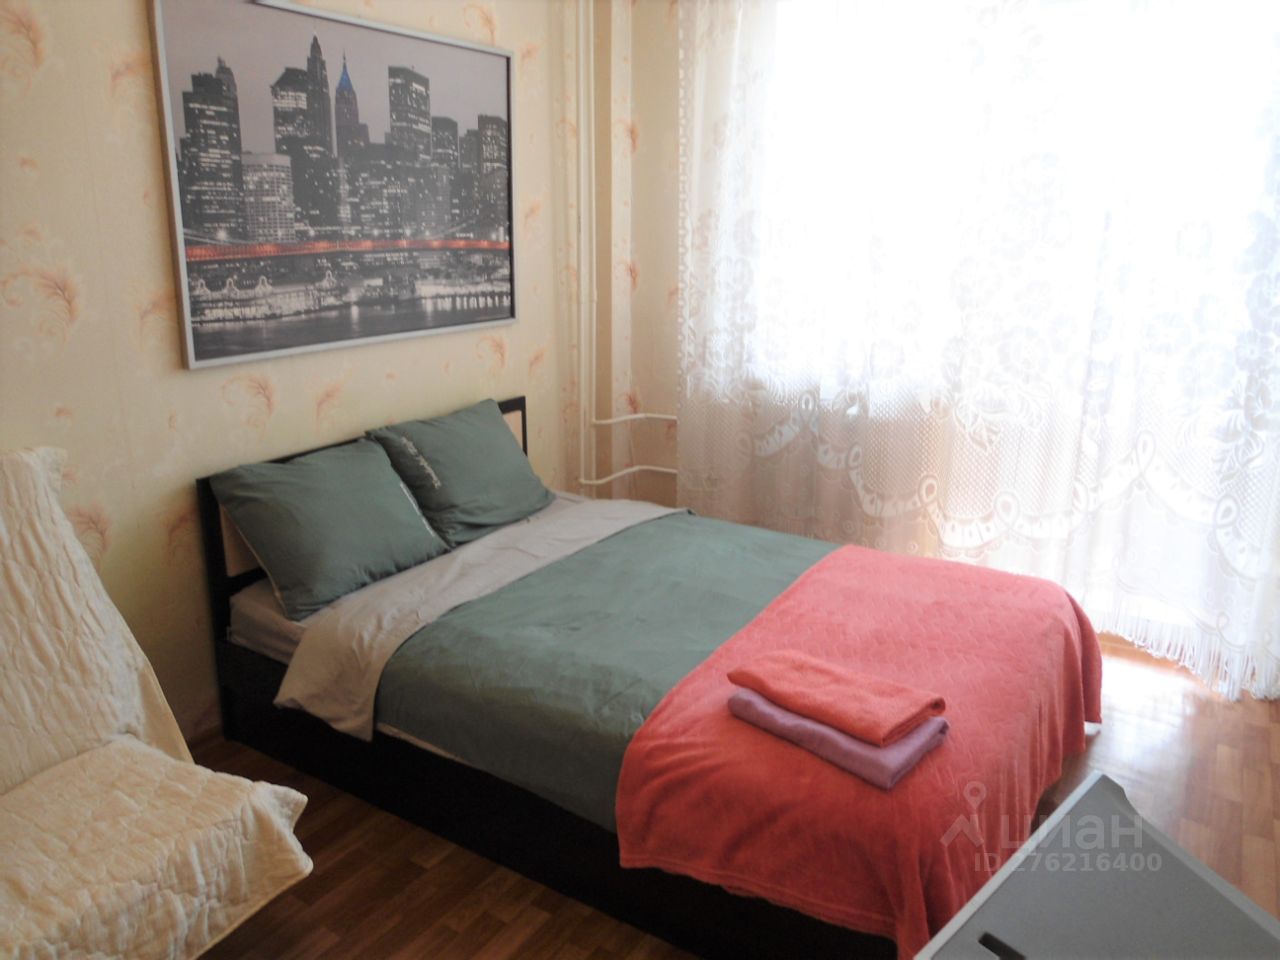 Уютная квартира в Екатеринбурге, 32 кв.м, 14 этаж, 1 комната, без отделки, просторная жилая зона, светлая кухня, посуточная аренда.